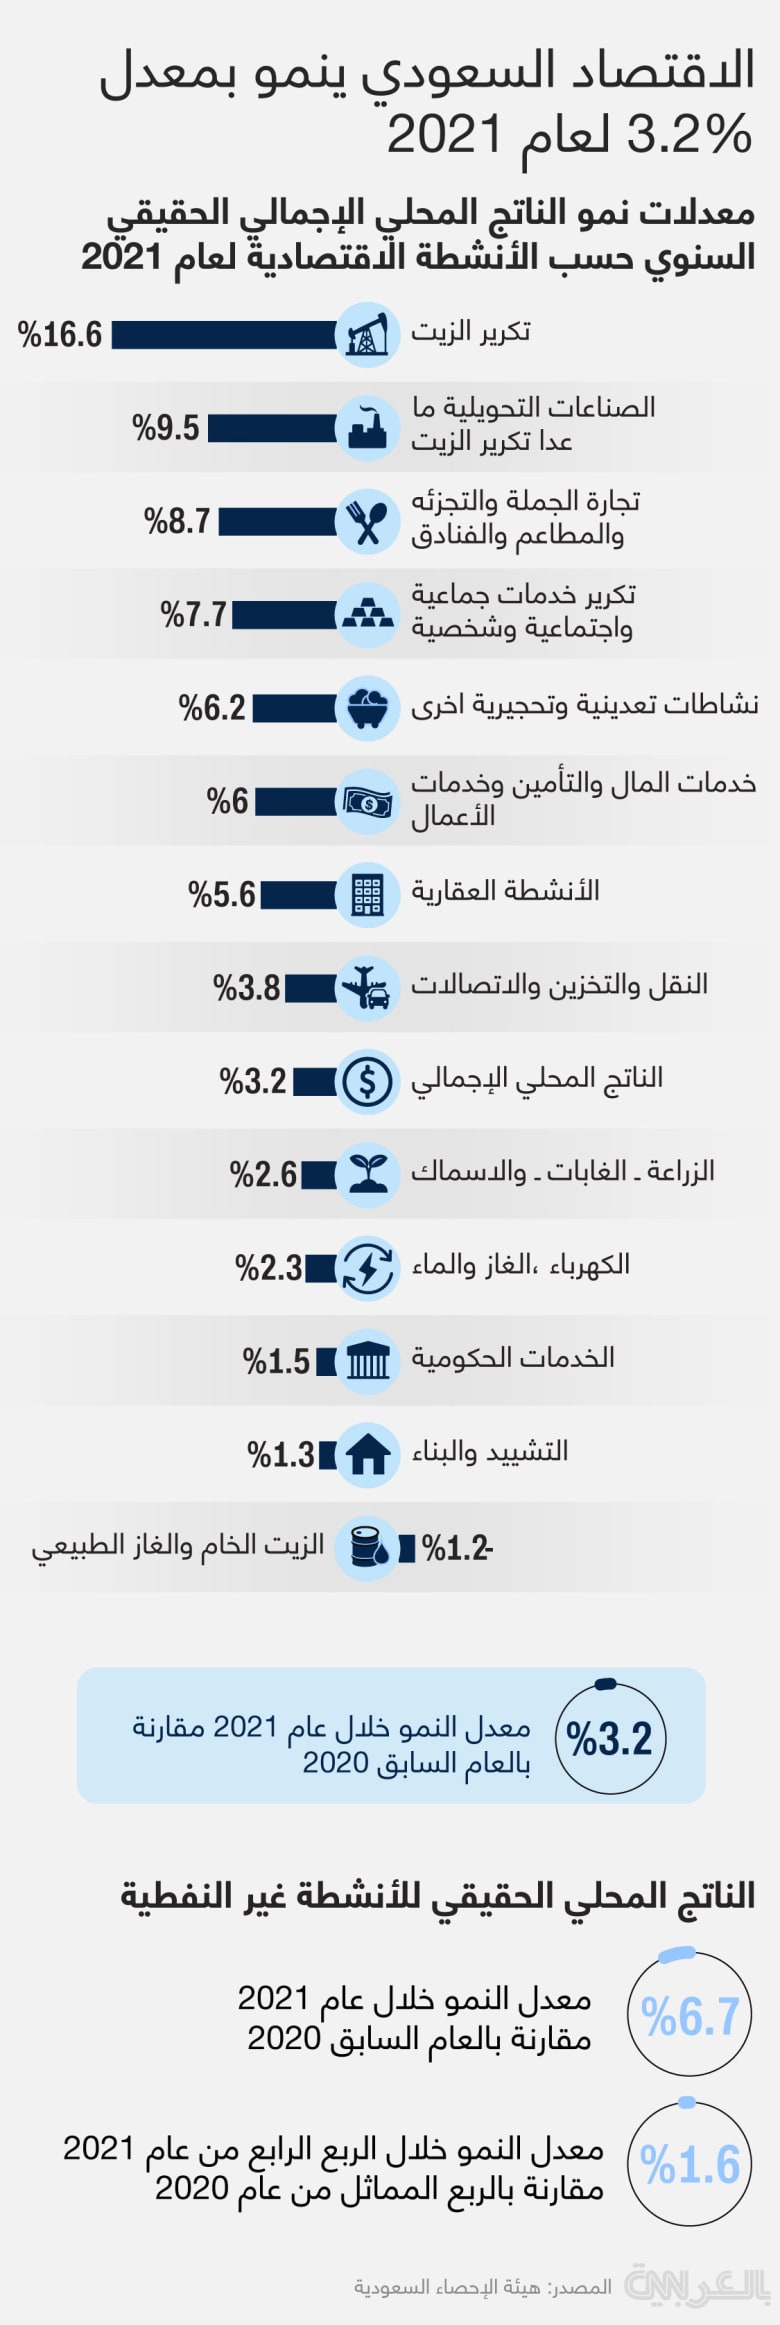 اقتصاد المملكة العربية السعودية